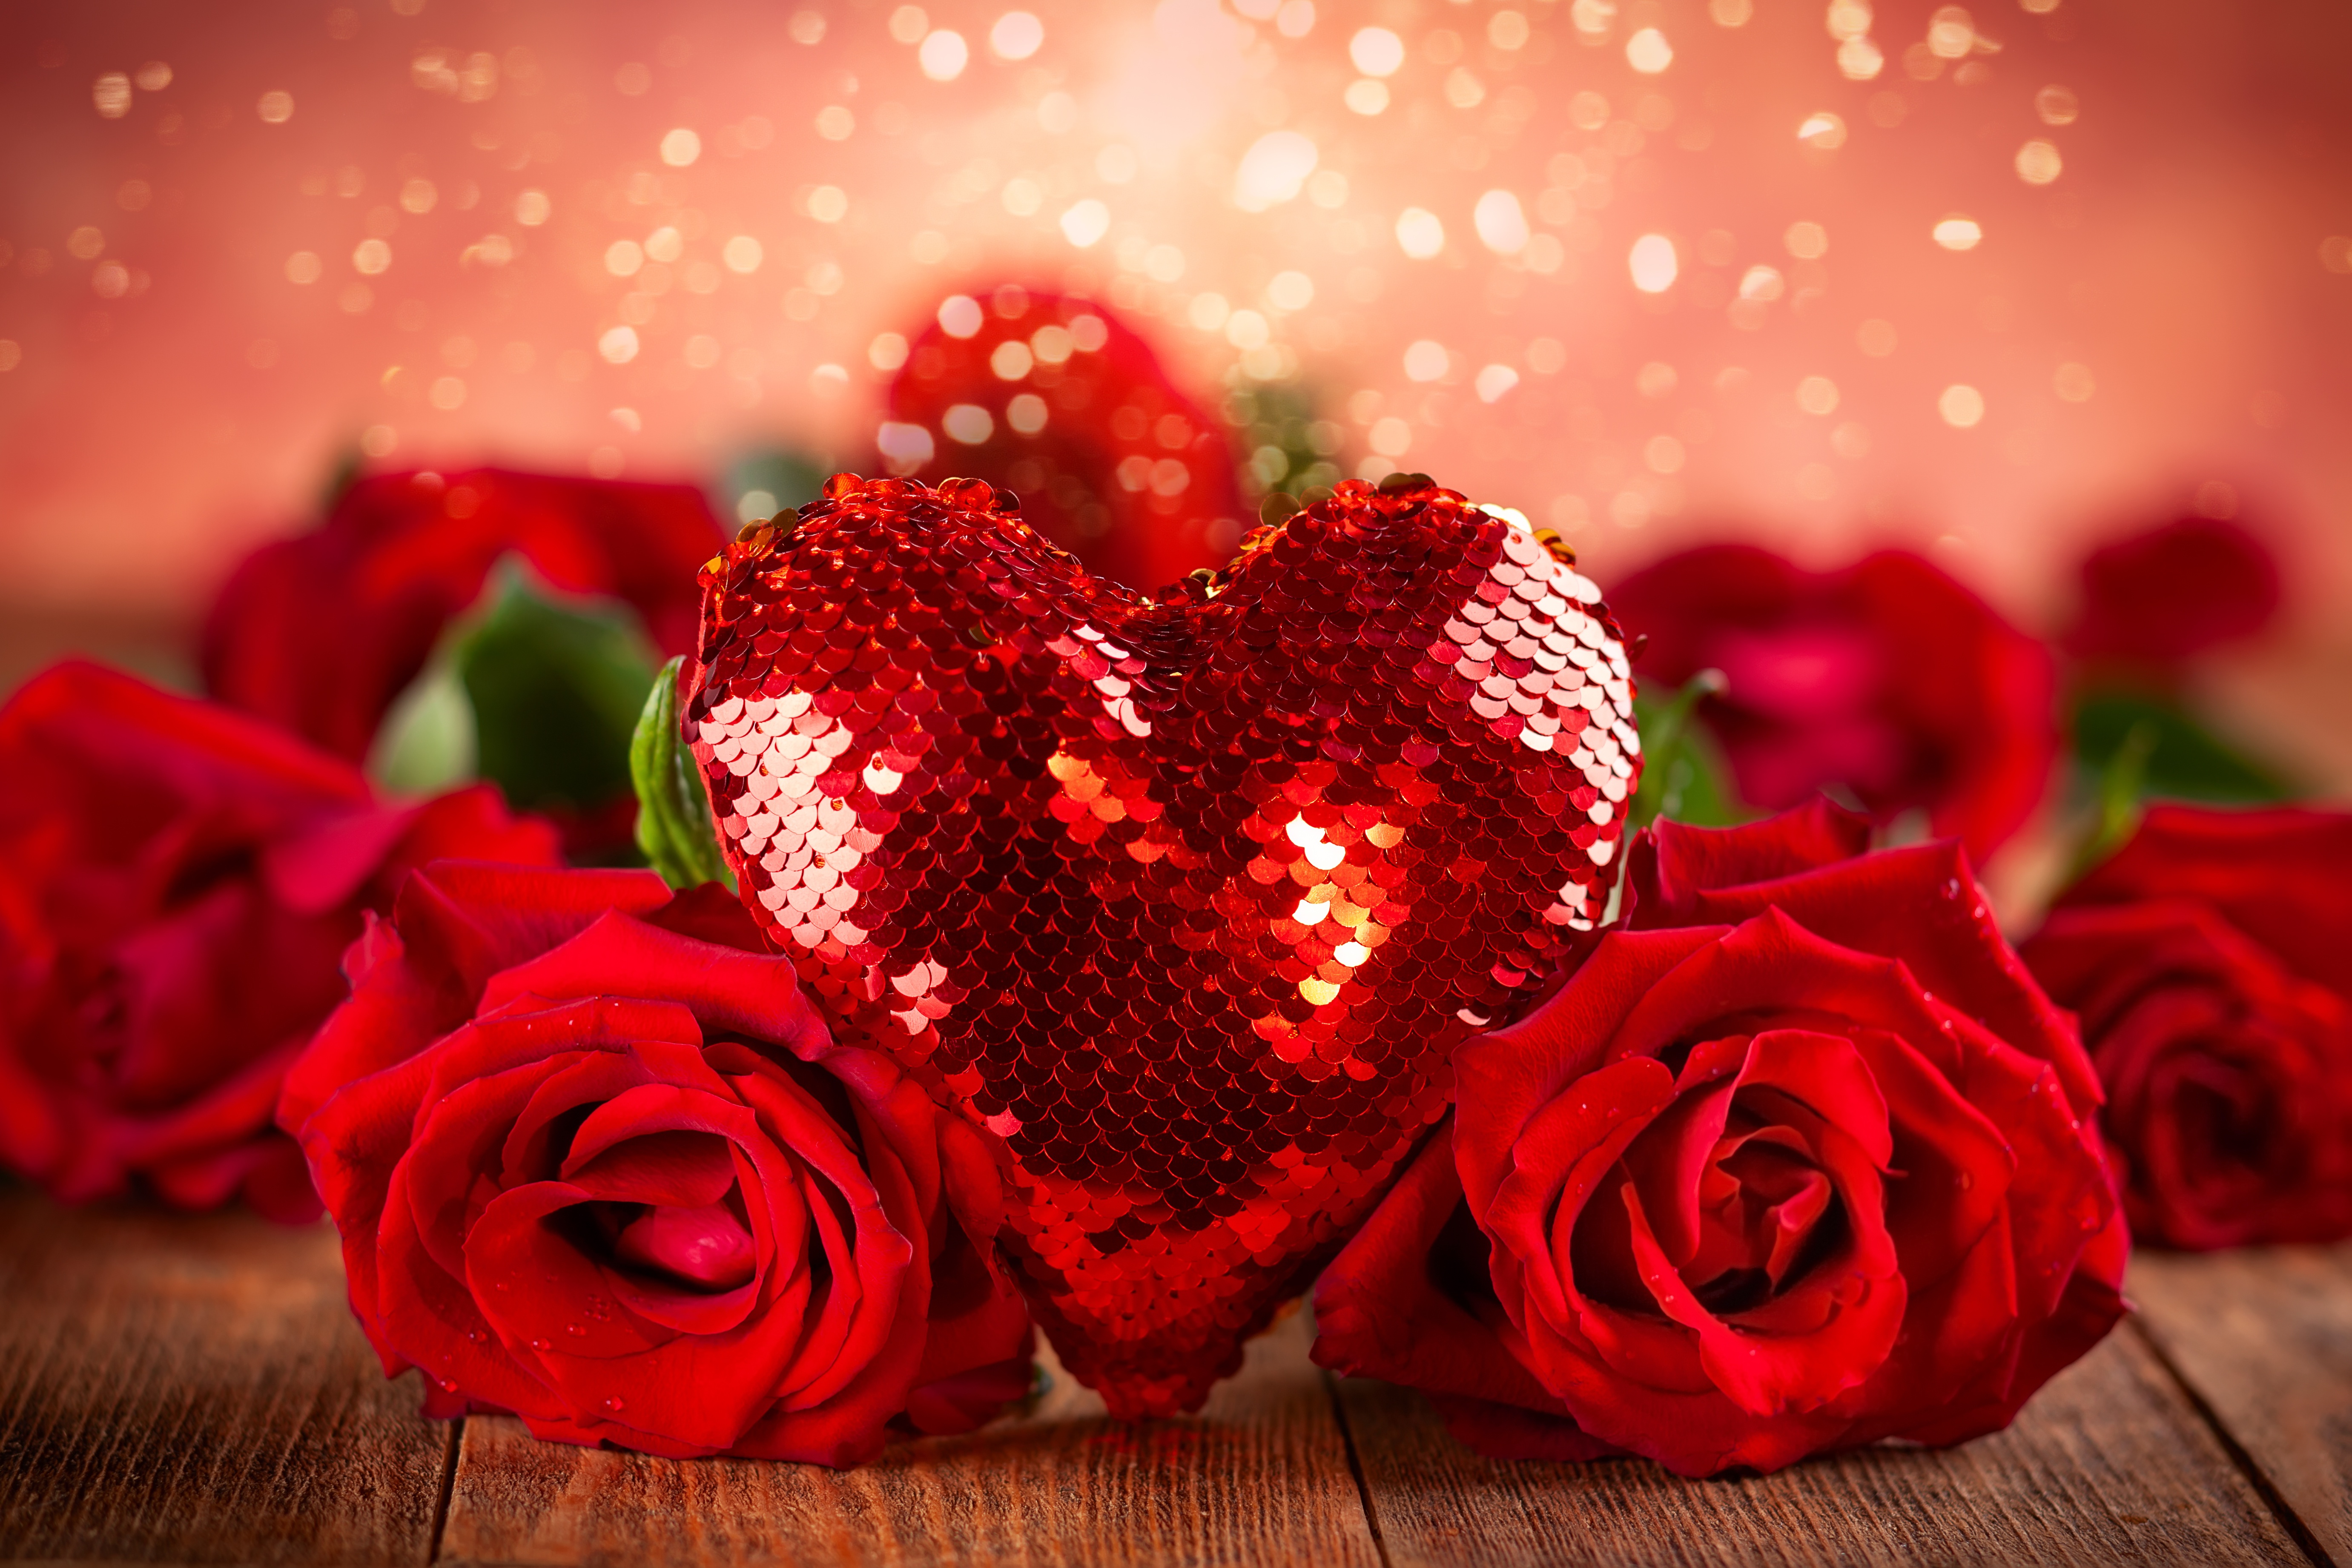 Скачать обои бесплатно Цветок, Роза, Сердце, Красная Роза, День Святого Валентина, Праздничные, Красный Цветок картинка на рабочий стол ПК